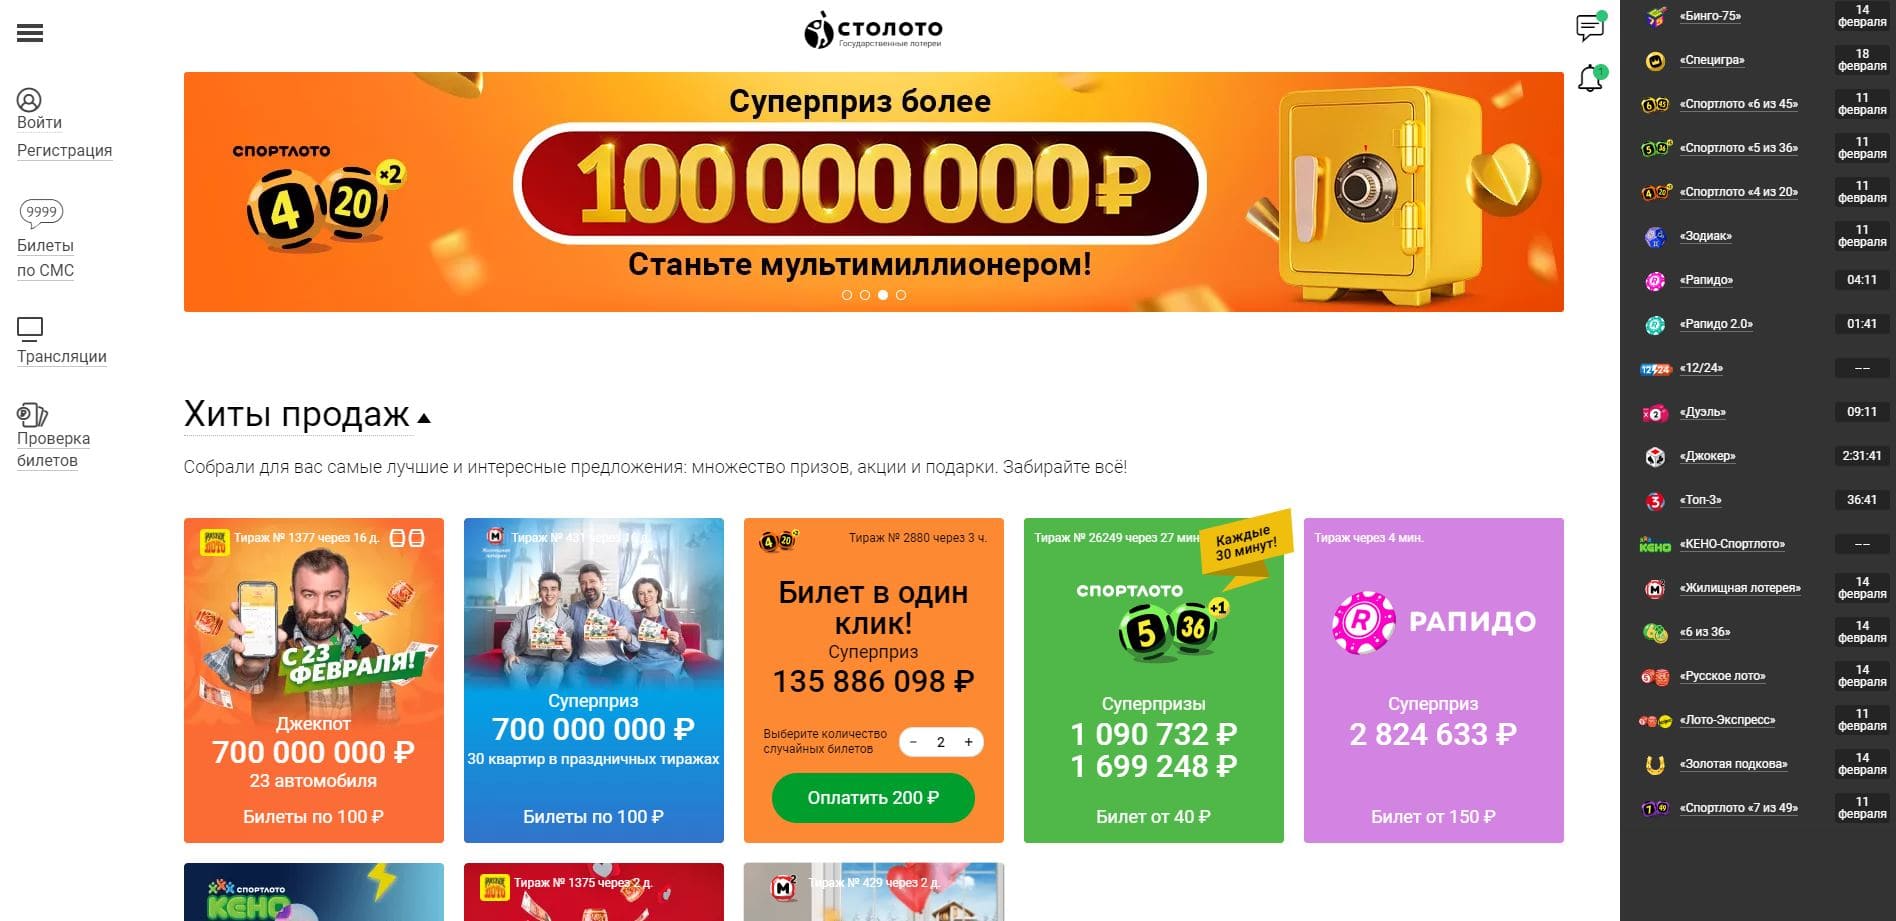 Квадратные метры столото джекпот онлайн казино вулкан на рубли